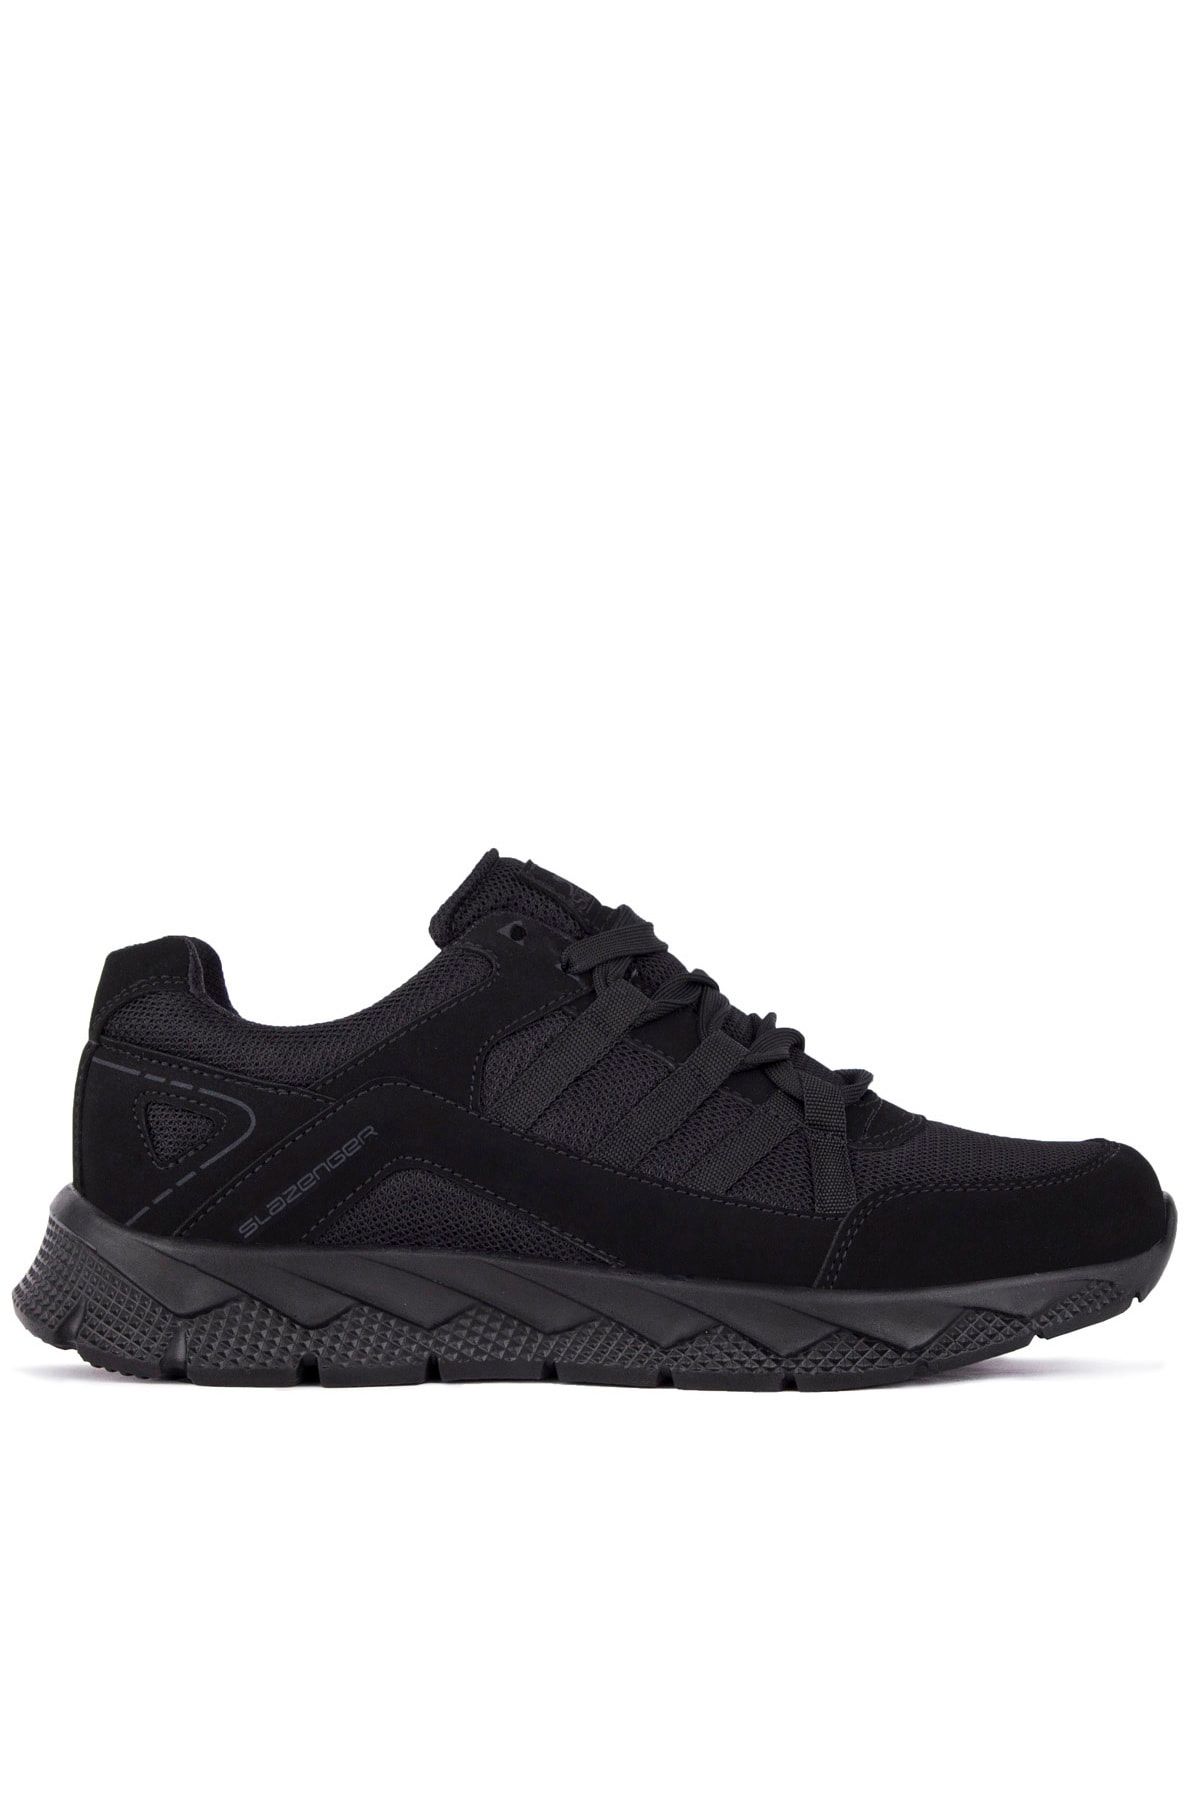 Slazenger Karman Sneaker Erkek Ayakkabı Siyah / Siyah